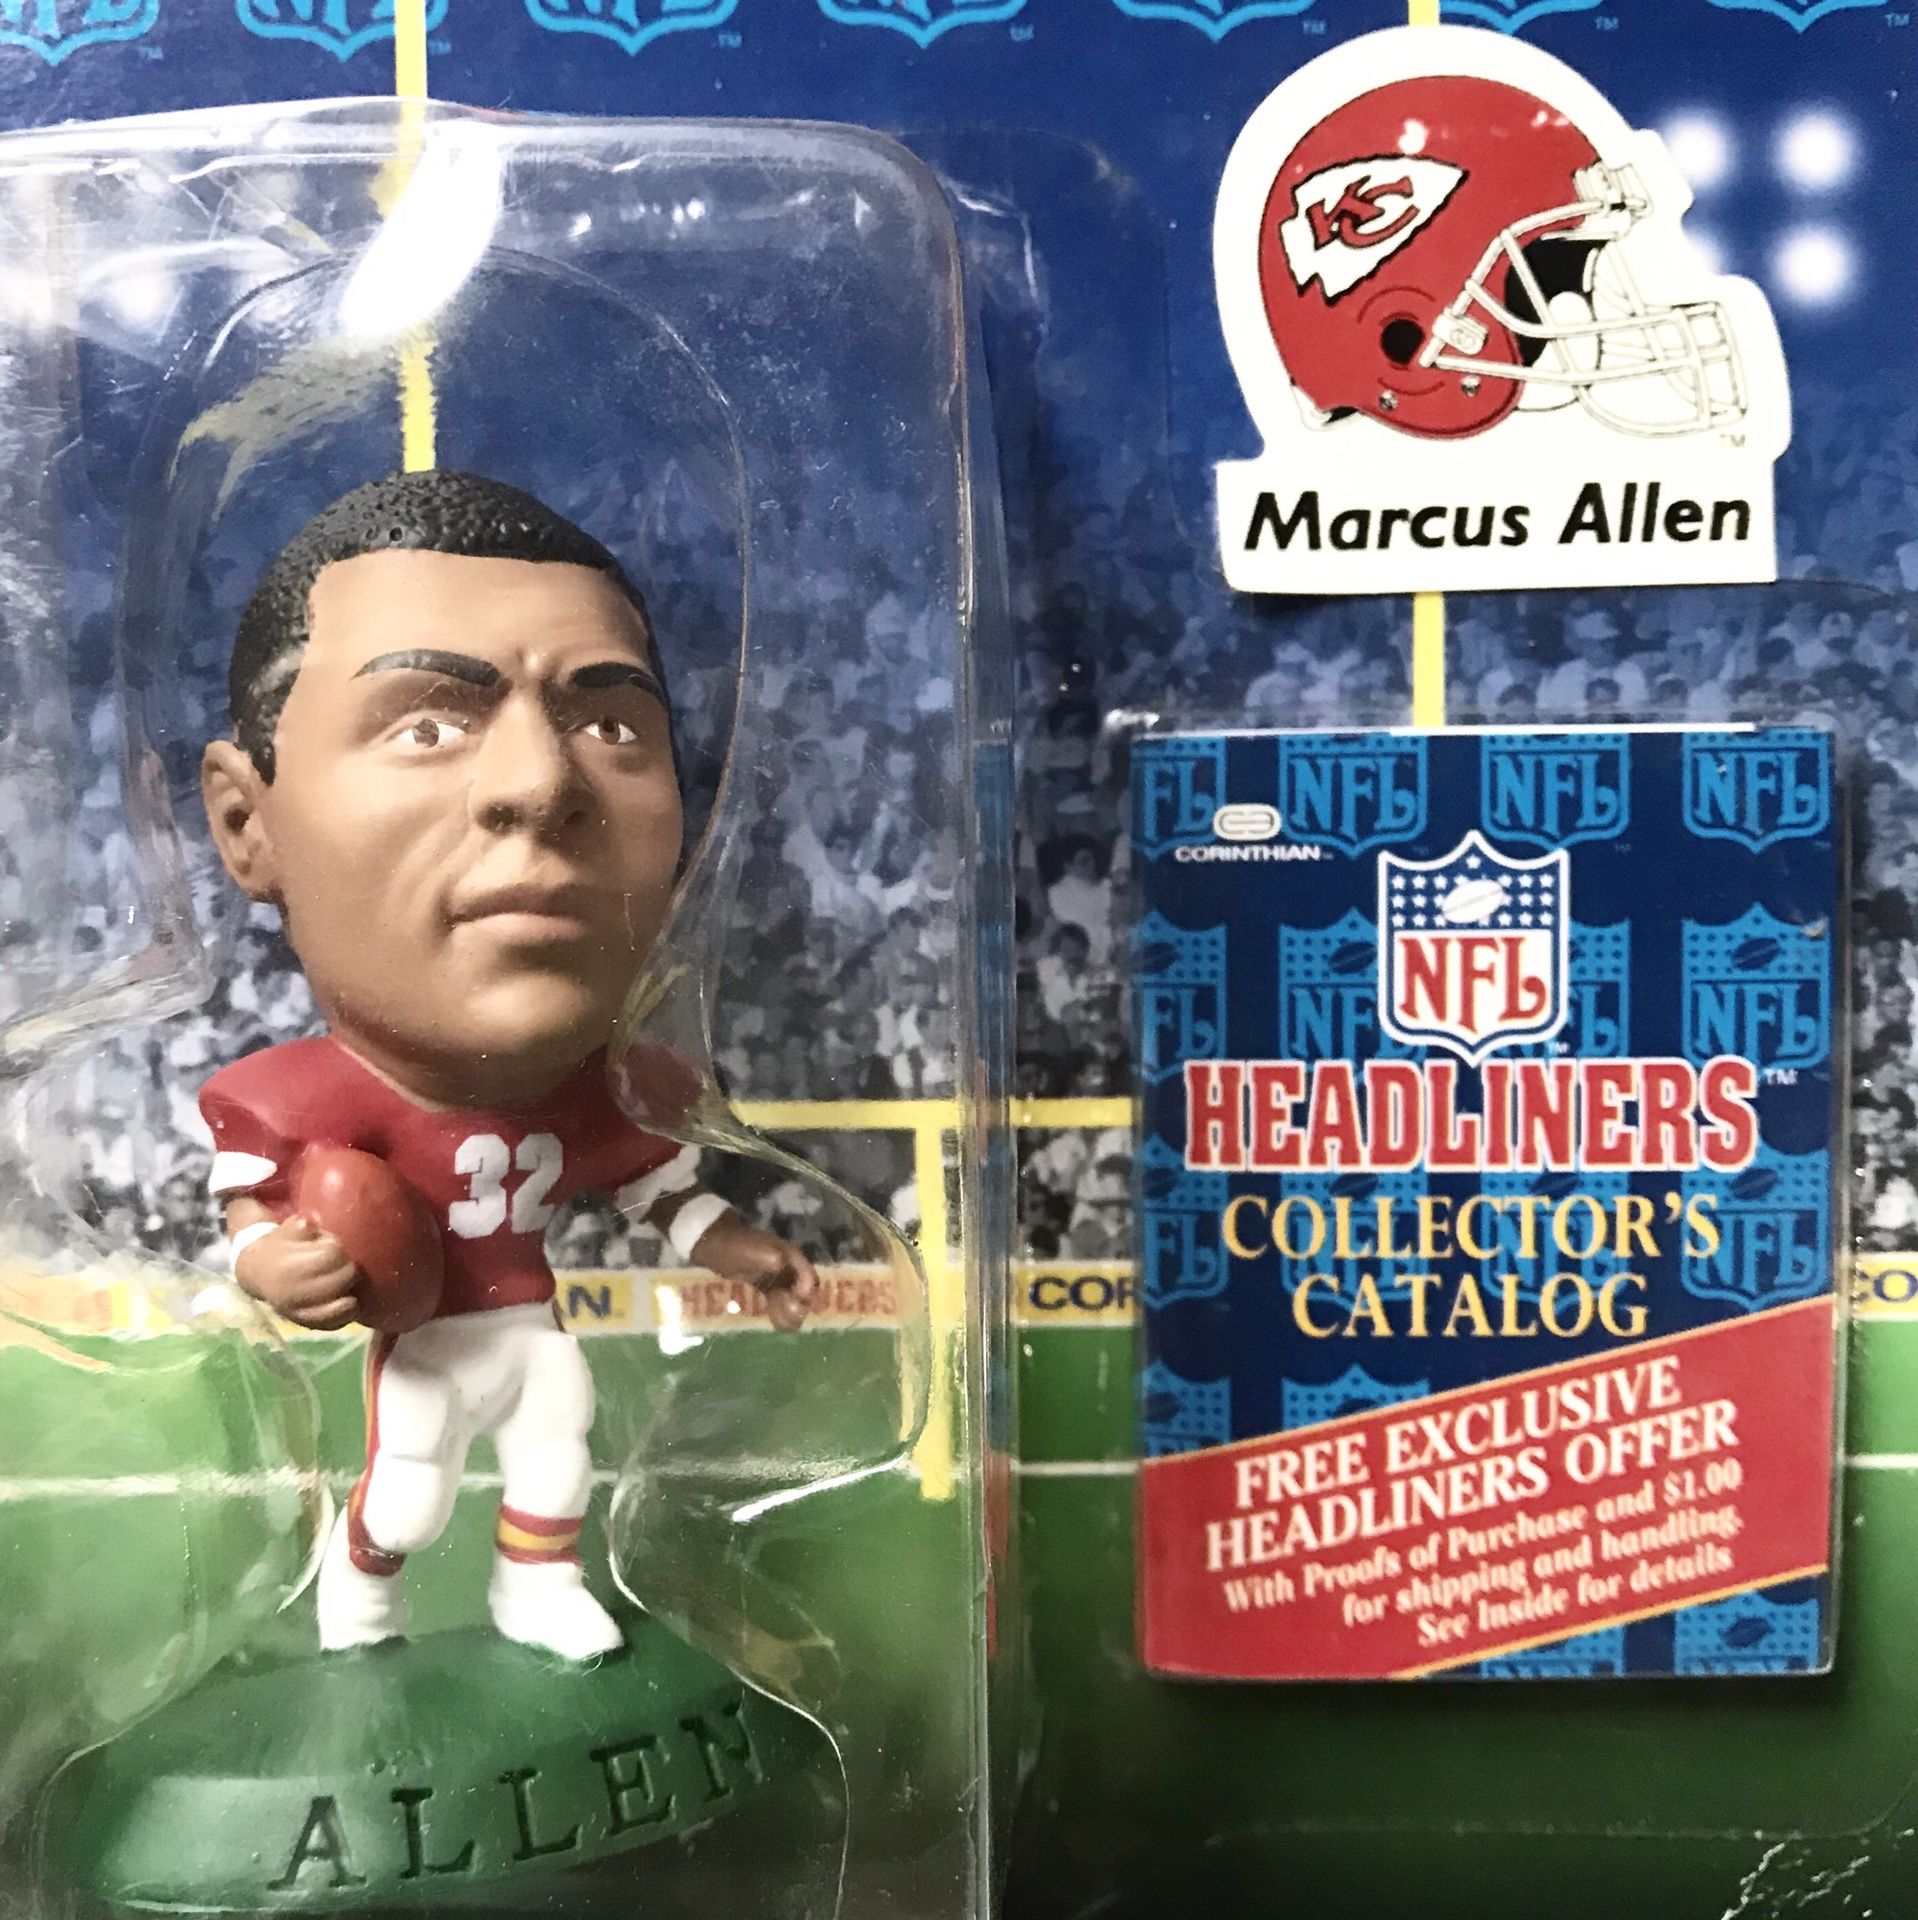 Marcus Allen NFL Headliners Corinthian Figure + Collectors Catalog NEW in Box 🏈